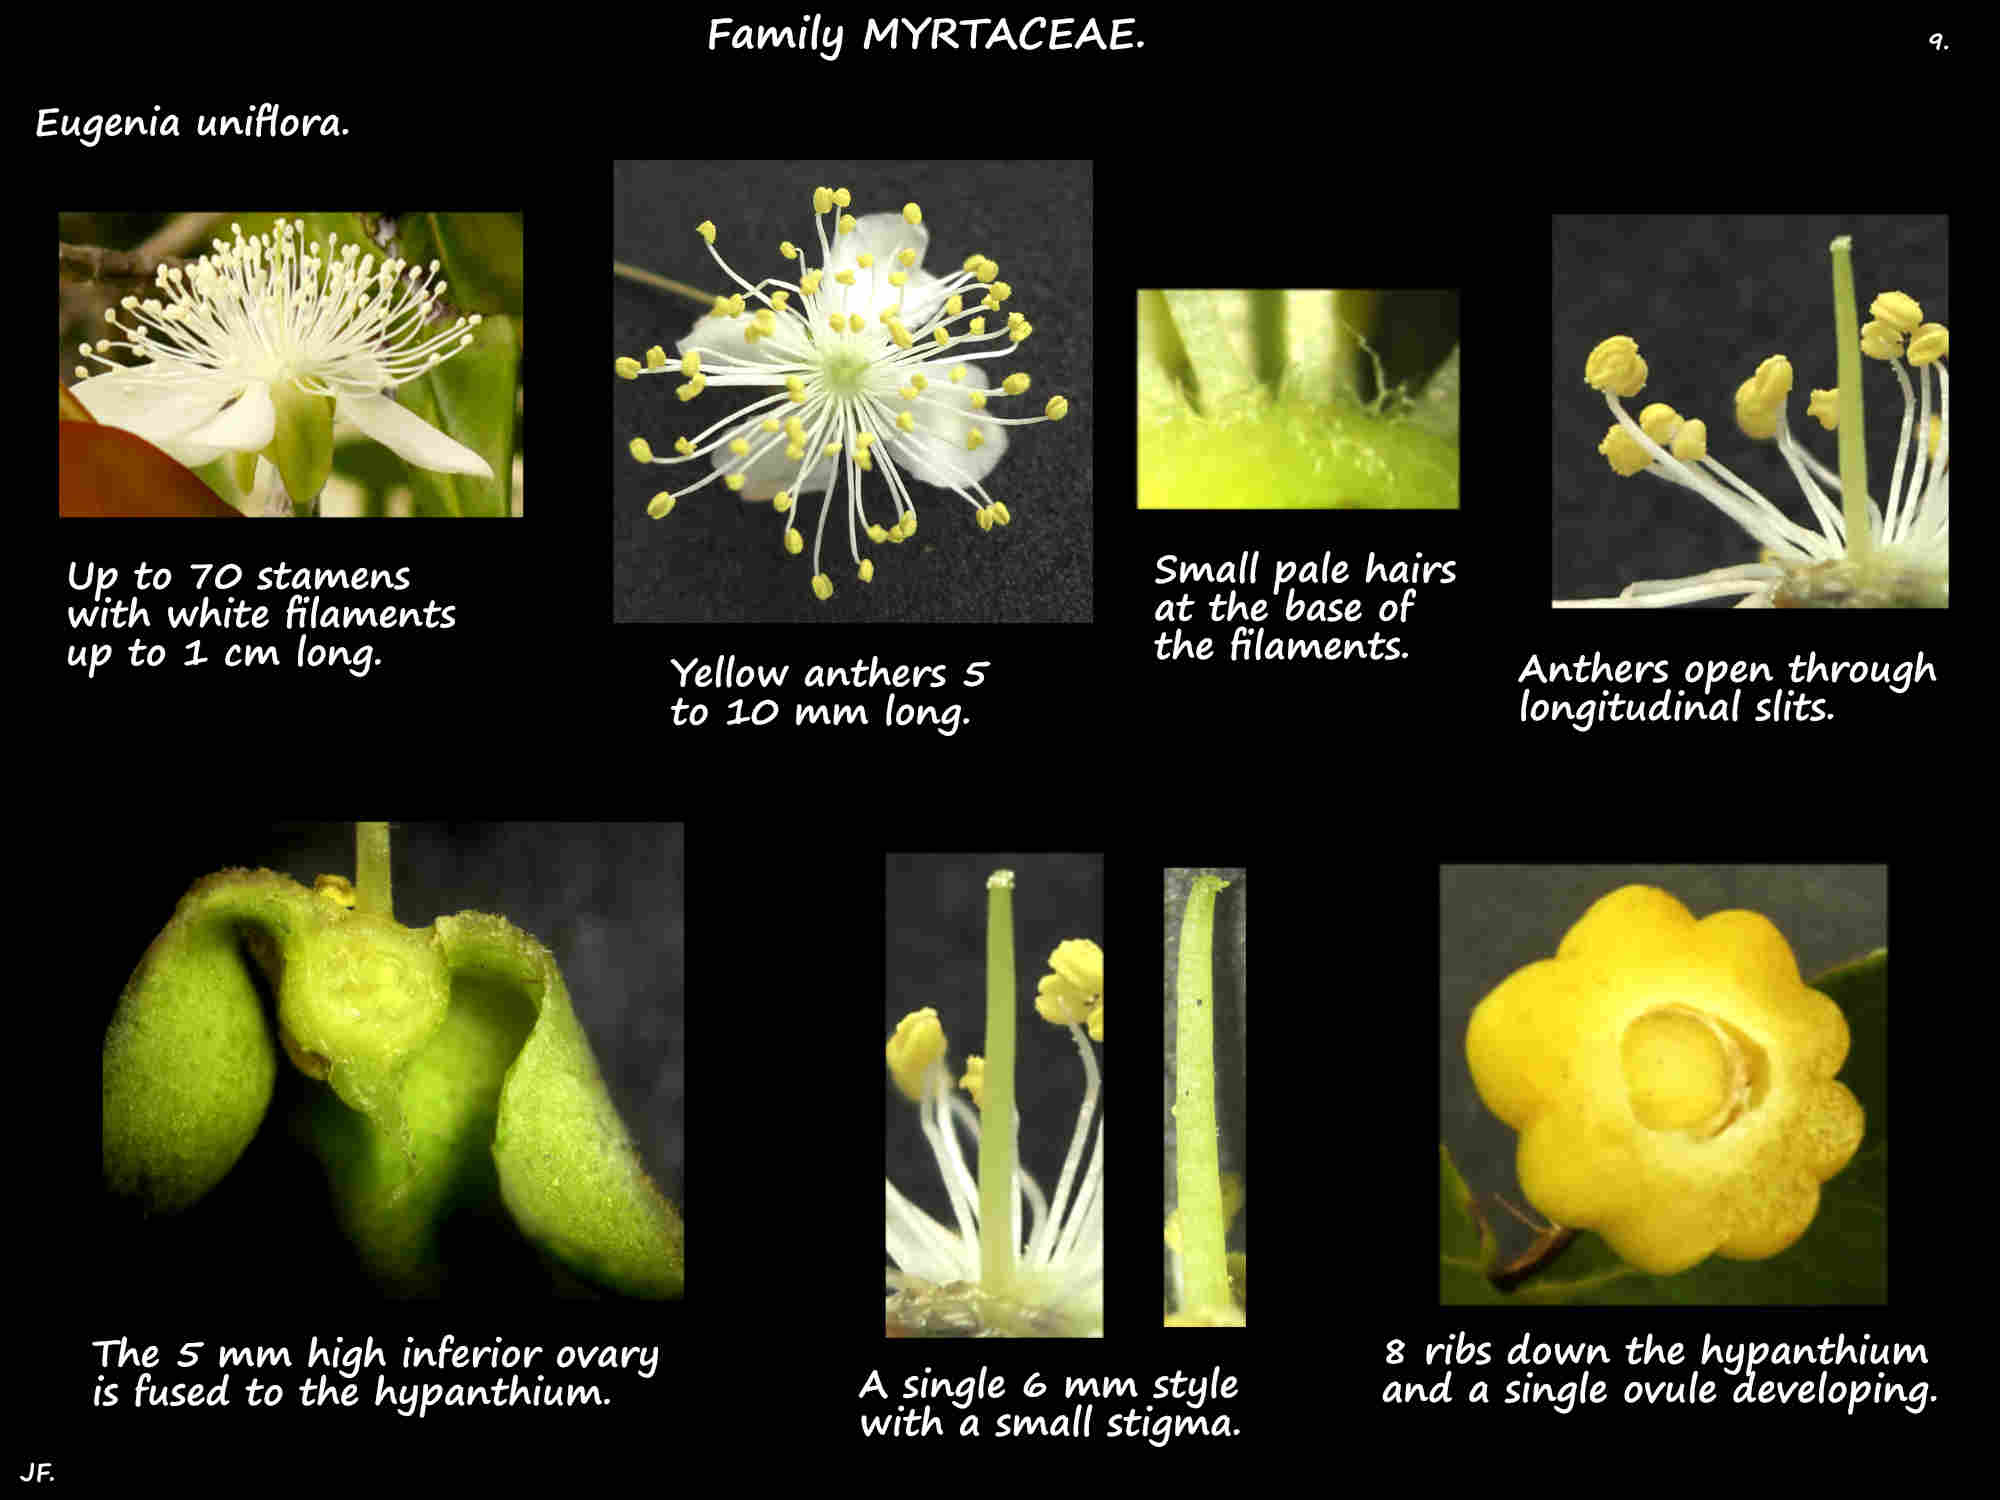 9 Eugenia uniflora stamens & ovary